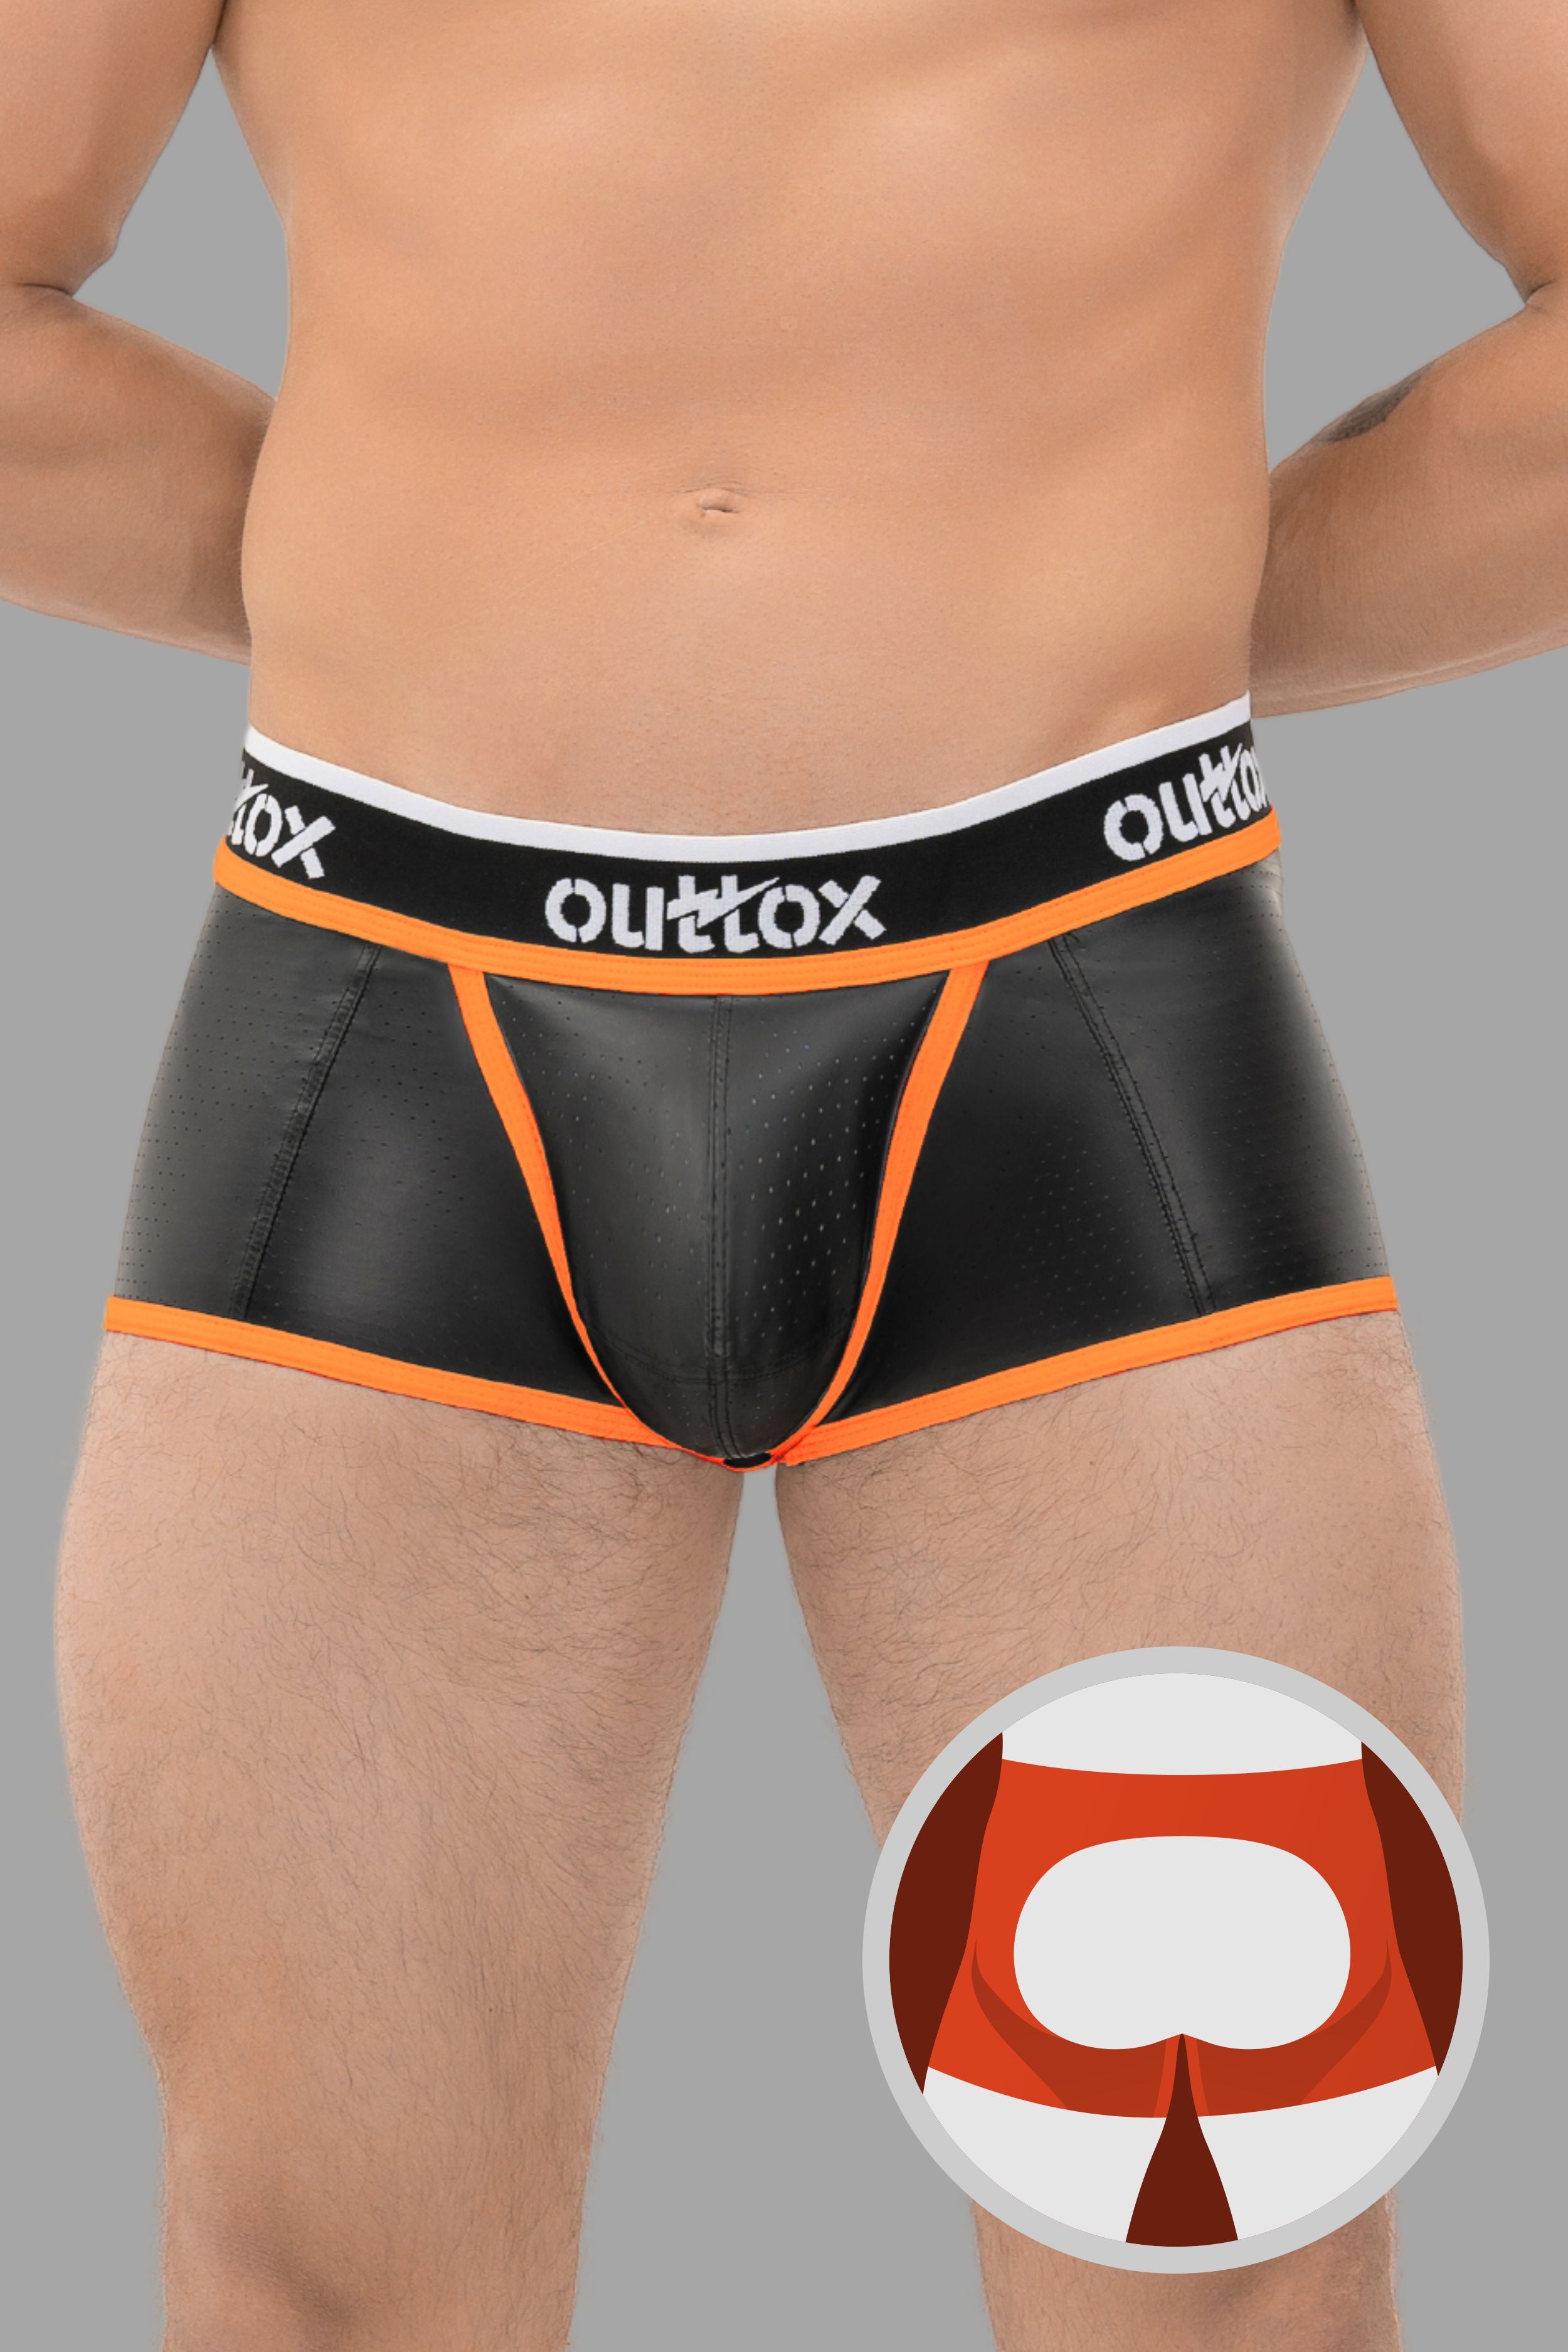 Outtox. Short de coffre arrière ouvert avec pièce à pression. Noir + Orange